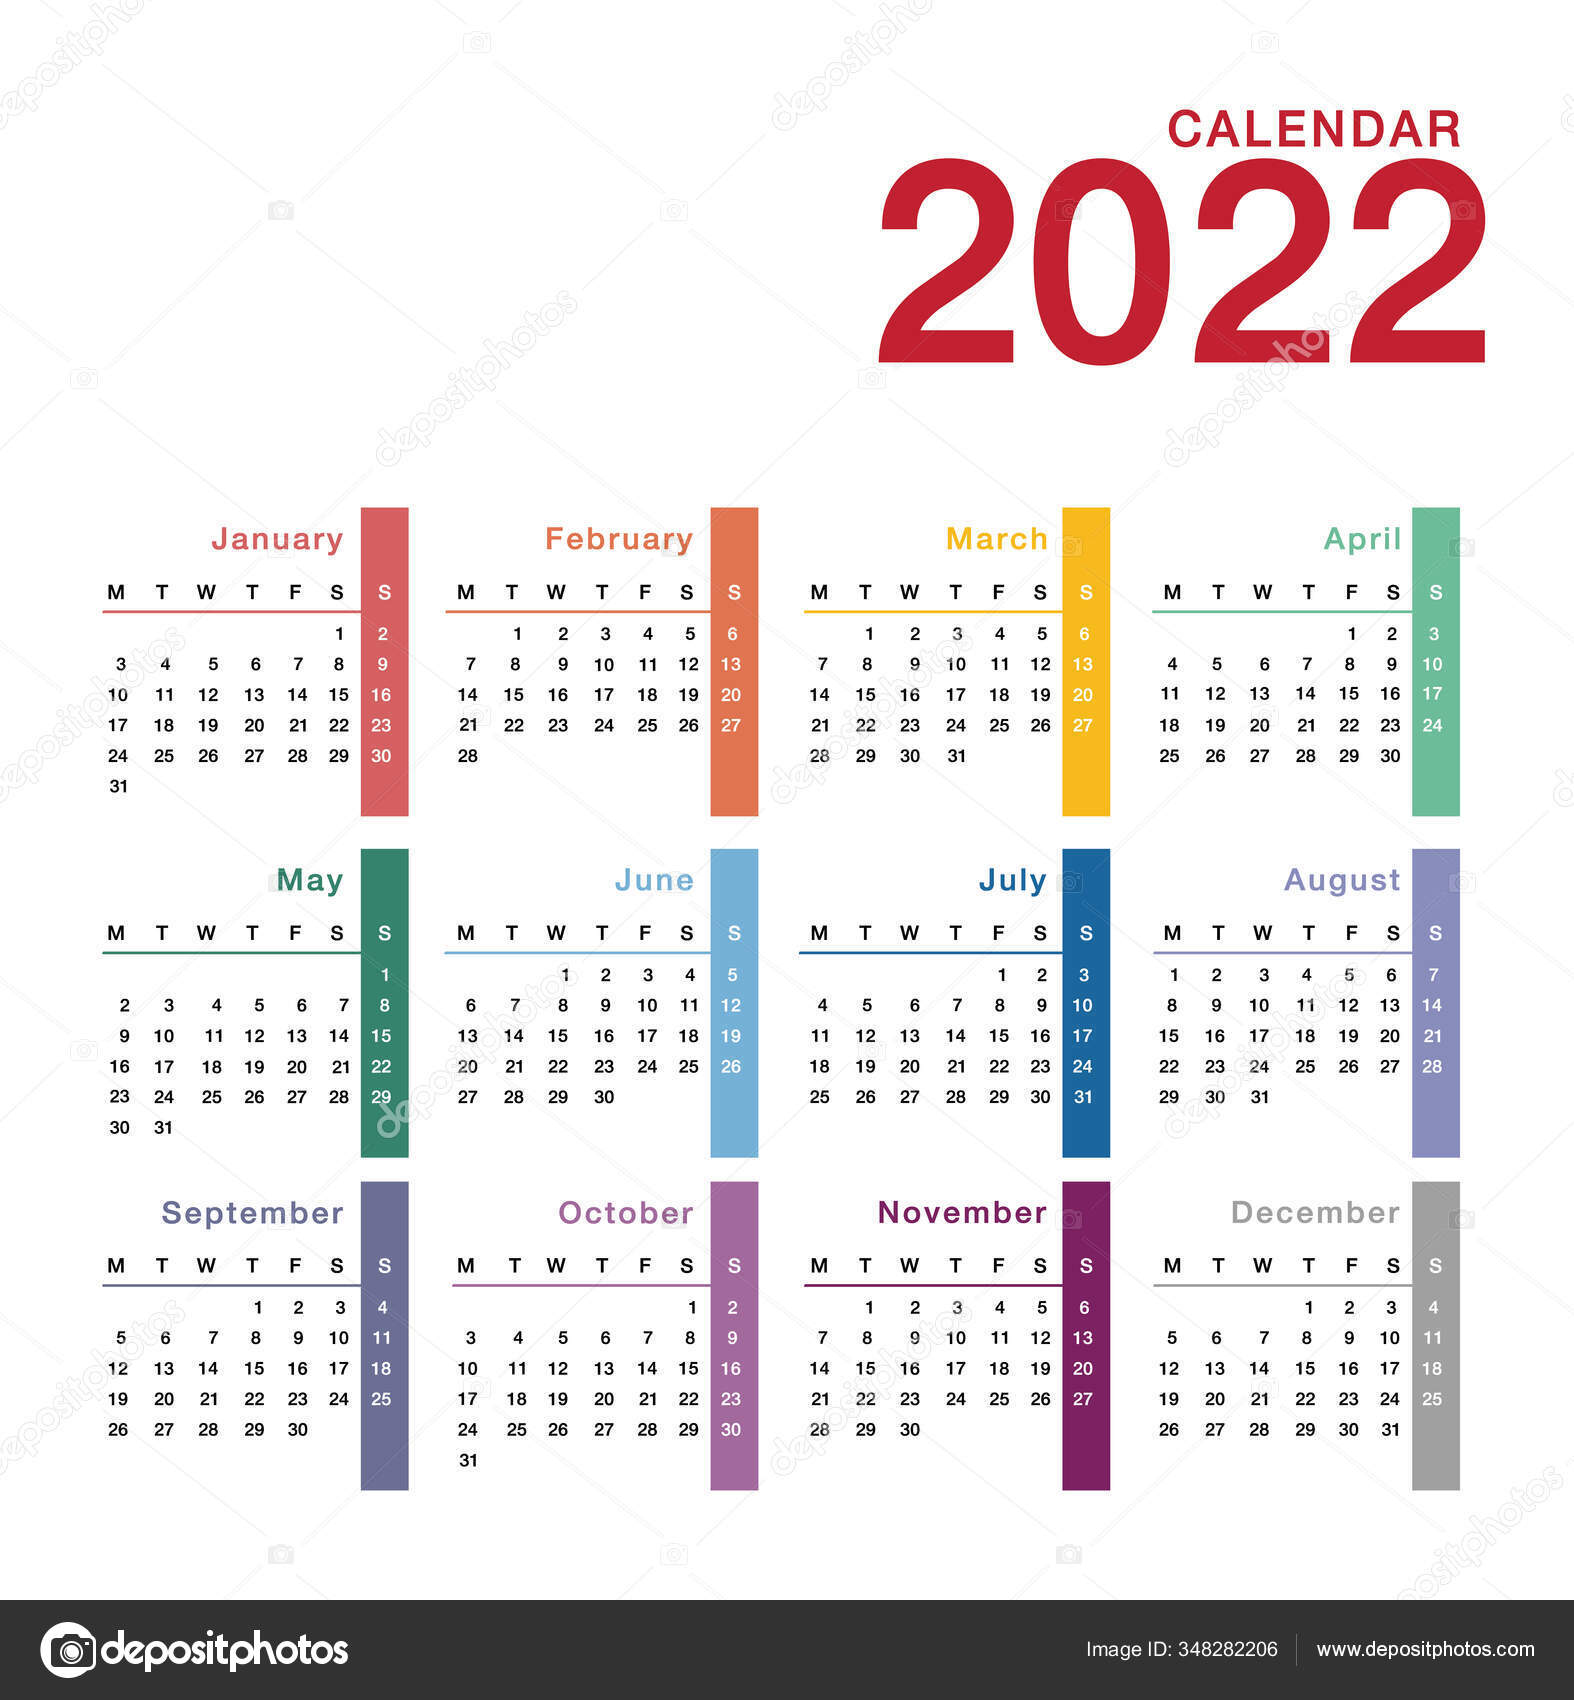 Calendarios Del Año 2022 Para Imprimir All In One Photos